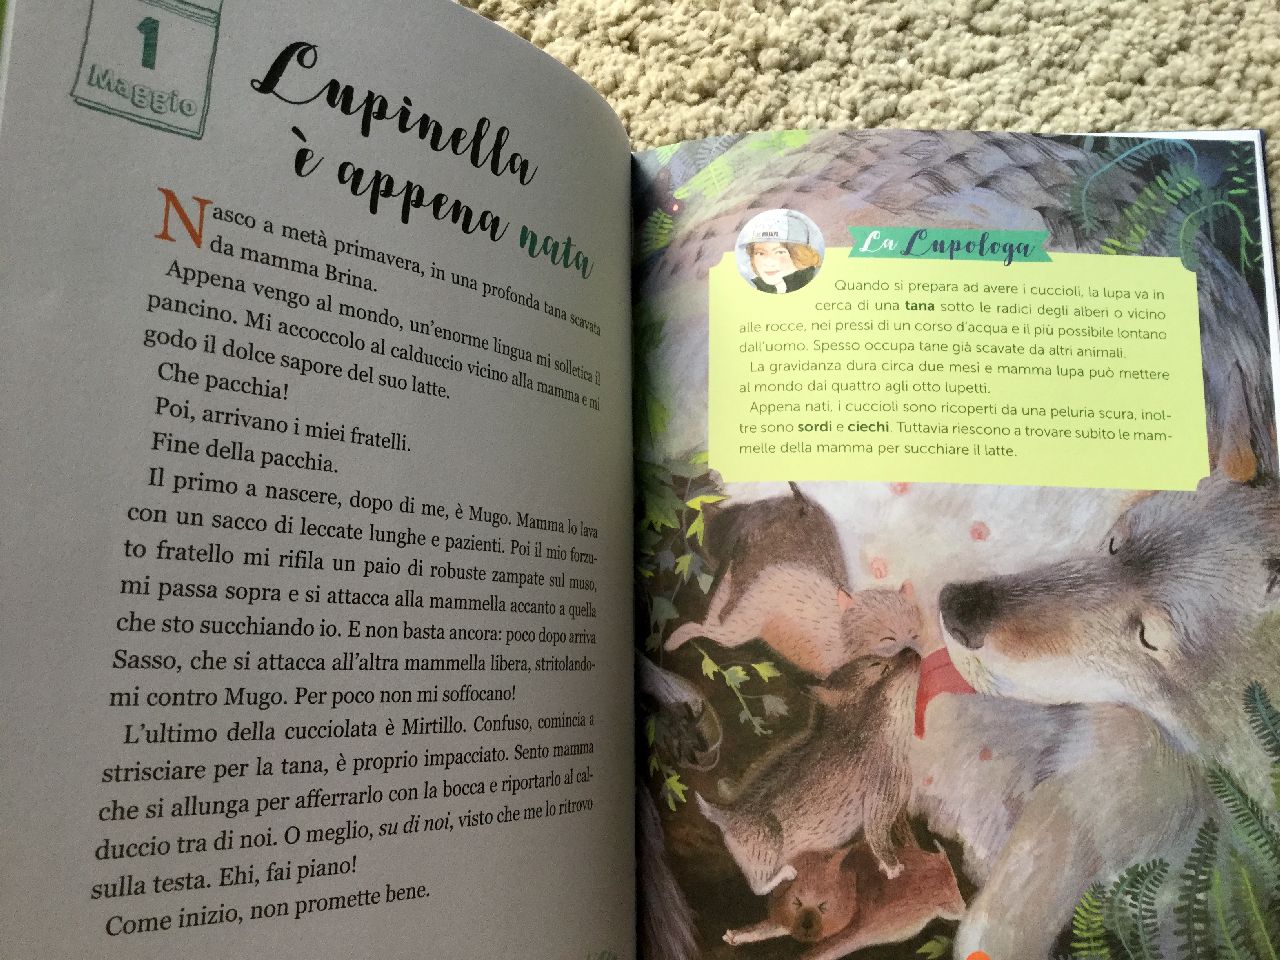 Giuseppe Festa - Mariachiara Di Giorgio, Lupinella. La vita di una lupa nei boschi delle Alpi, Editoriale Scienza 